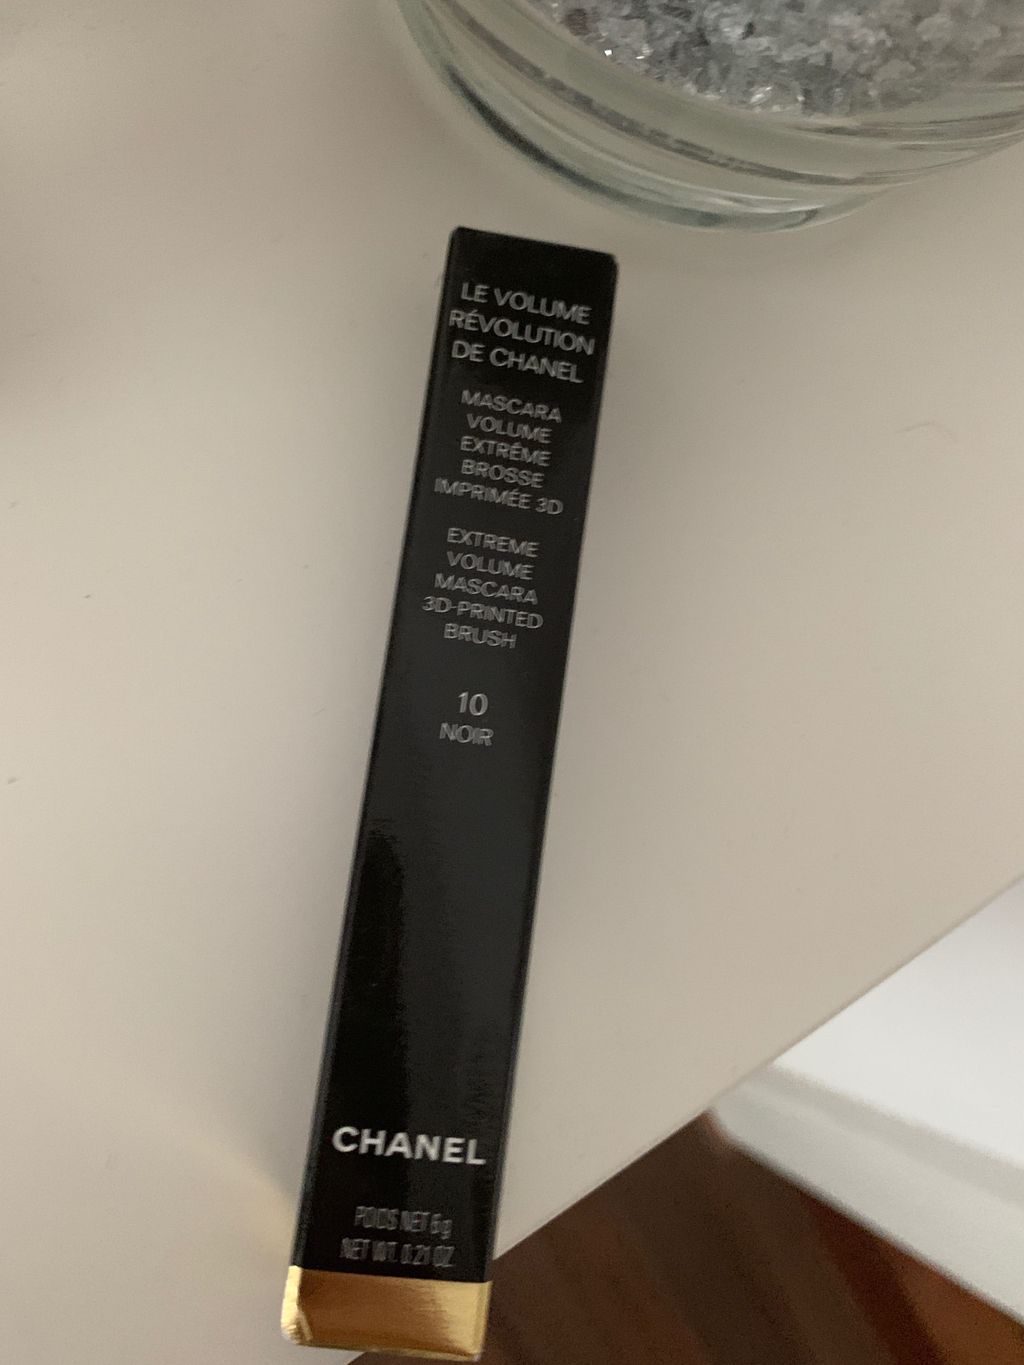 Chanel 10 noir mascara